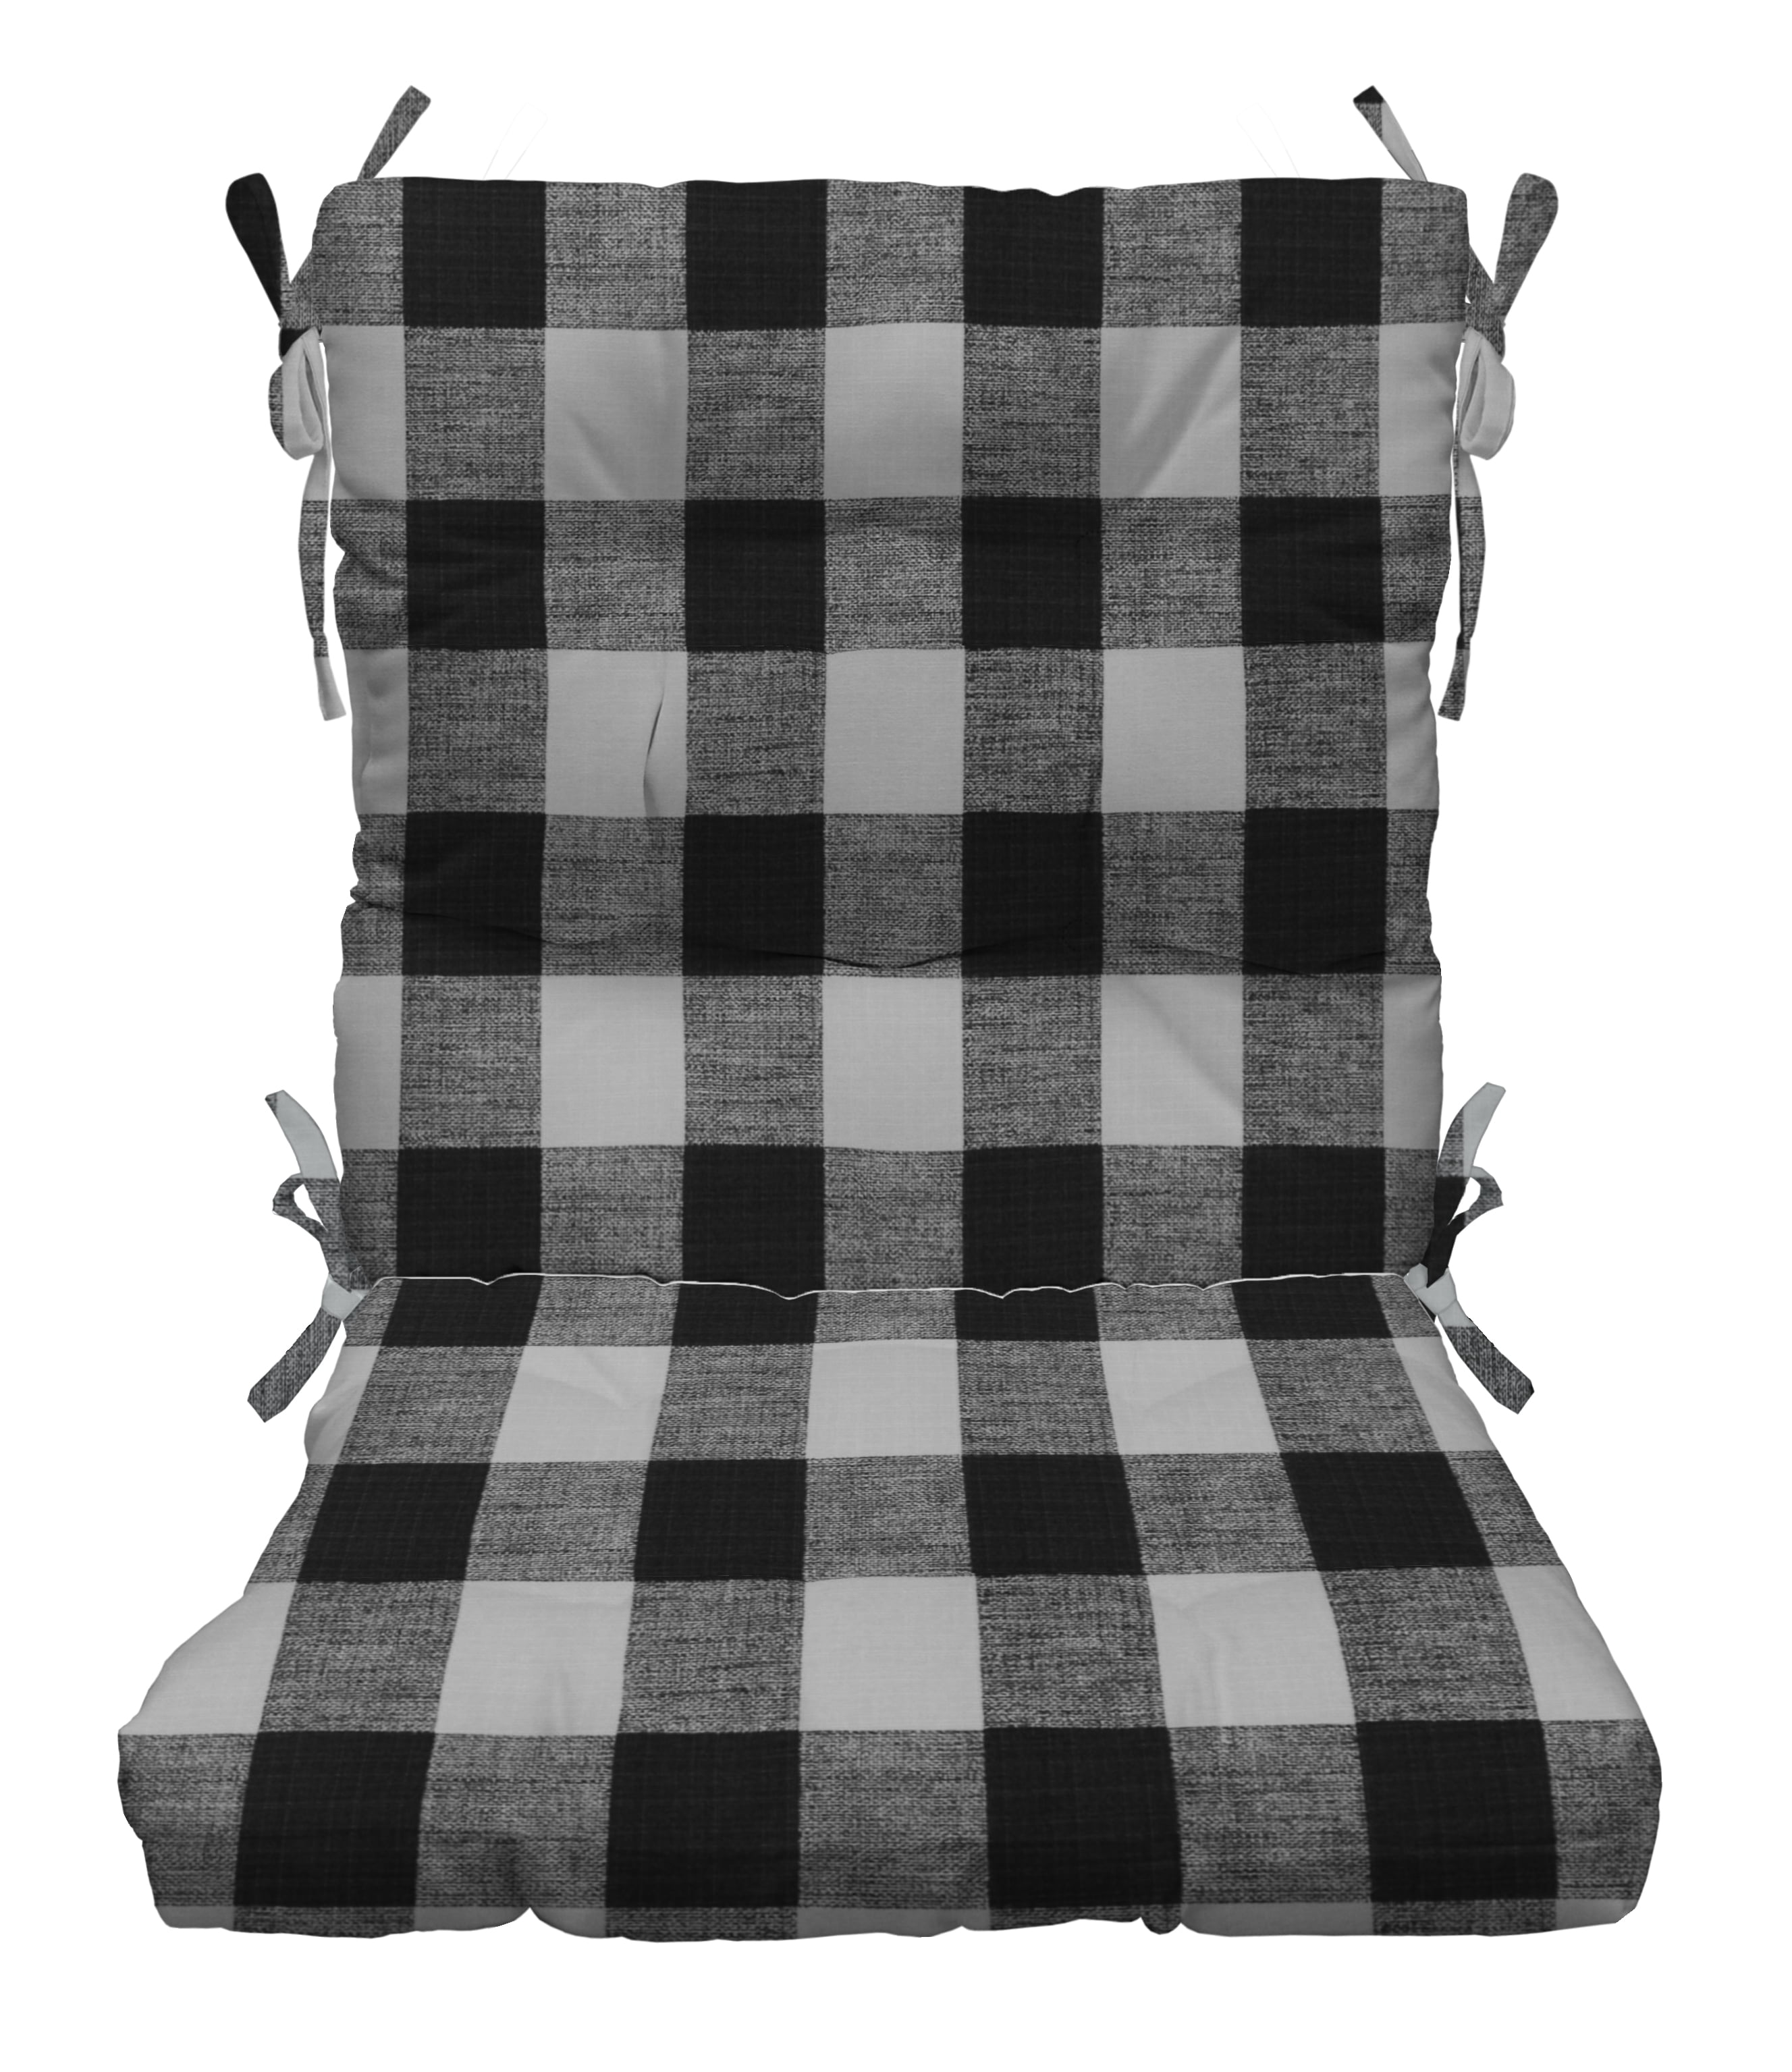 60 X 14 BLACK AND WHITE Buffalo Plaid Tufted Bench Cushion, Seat Cushion,  Farmhouse Cushion, 